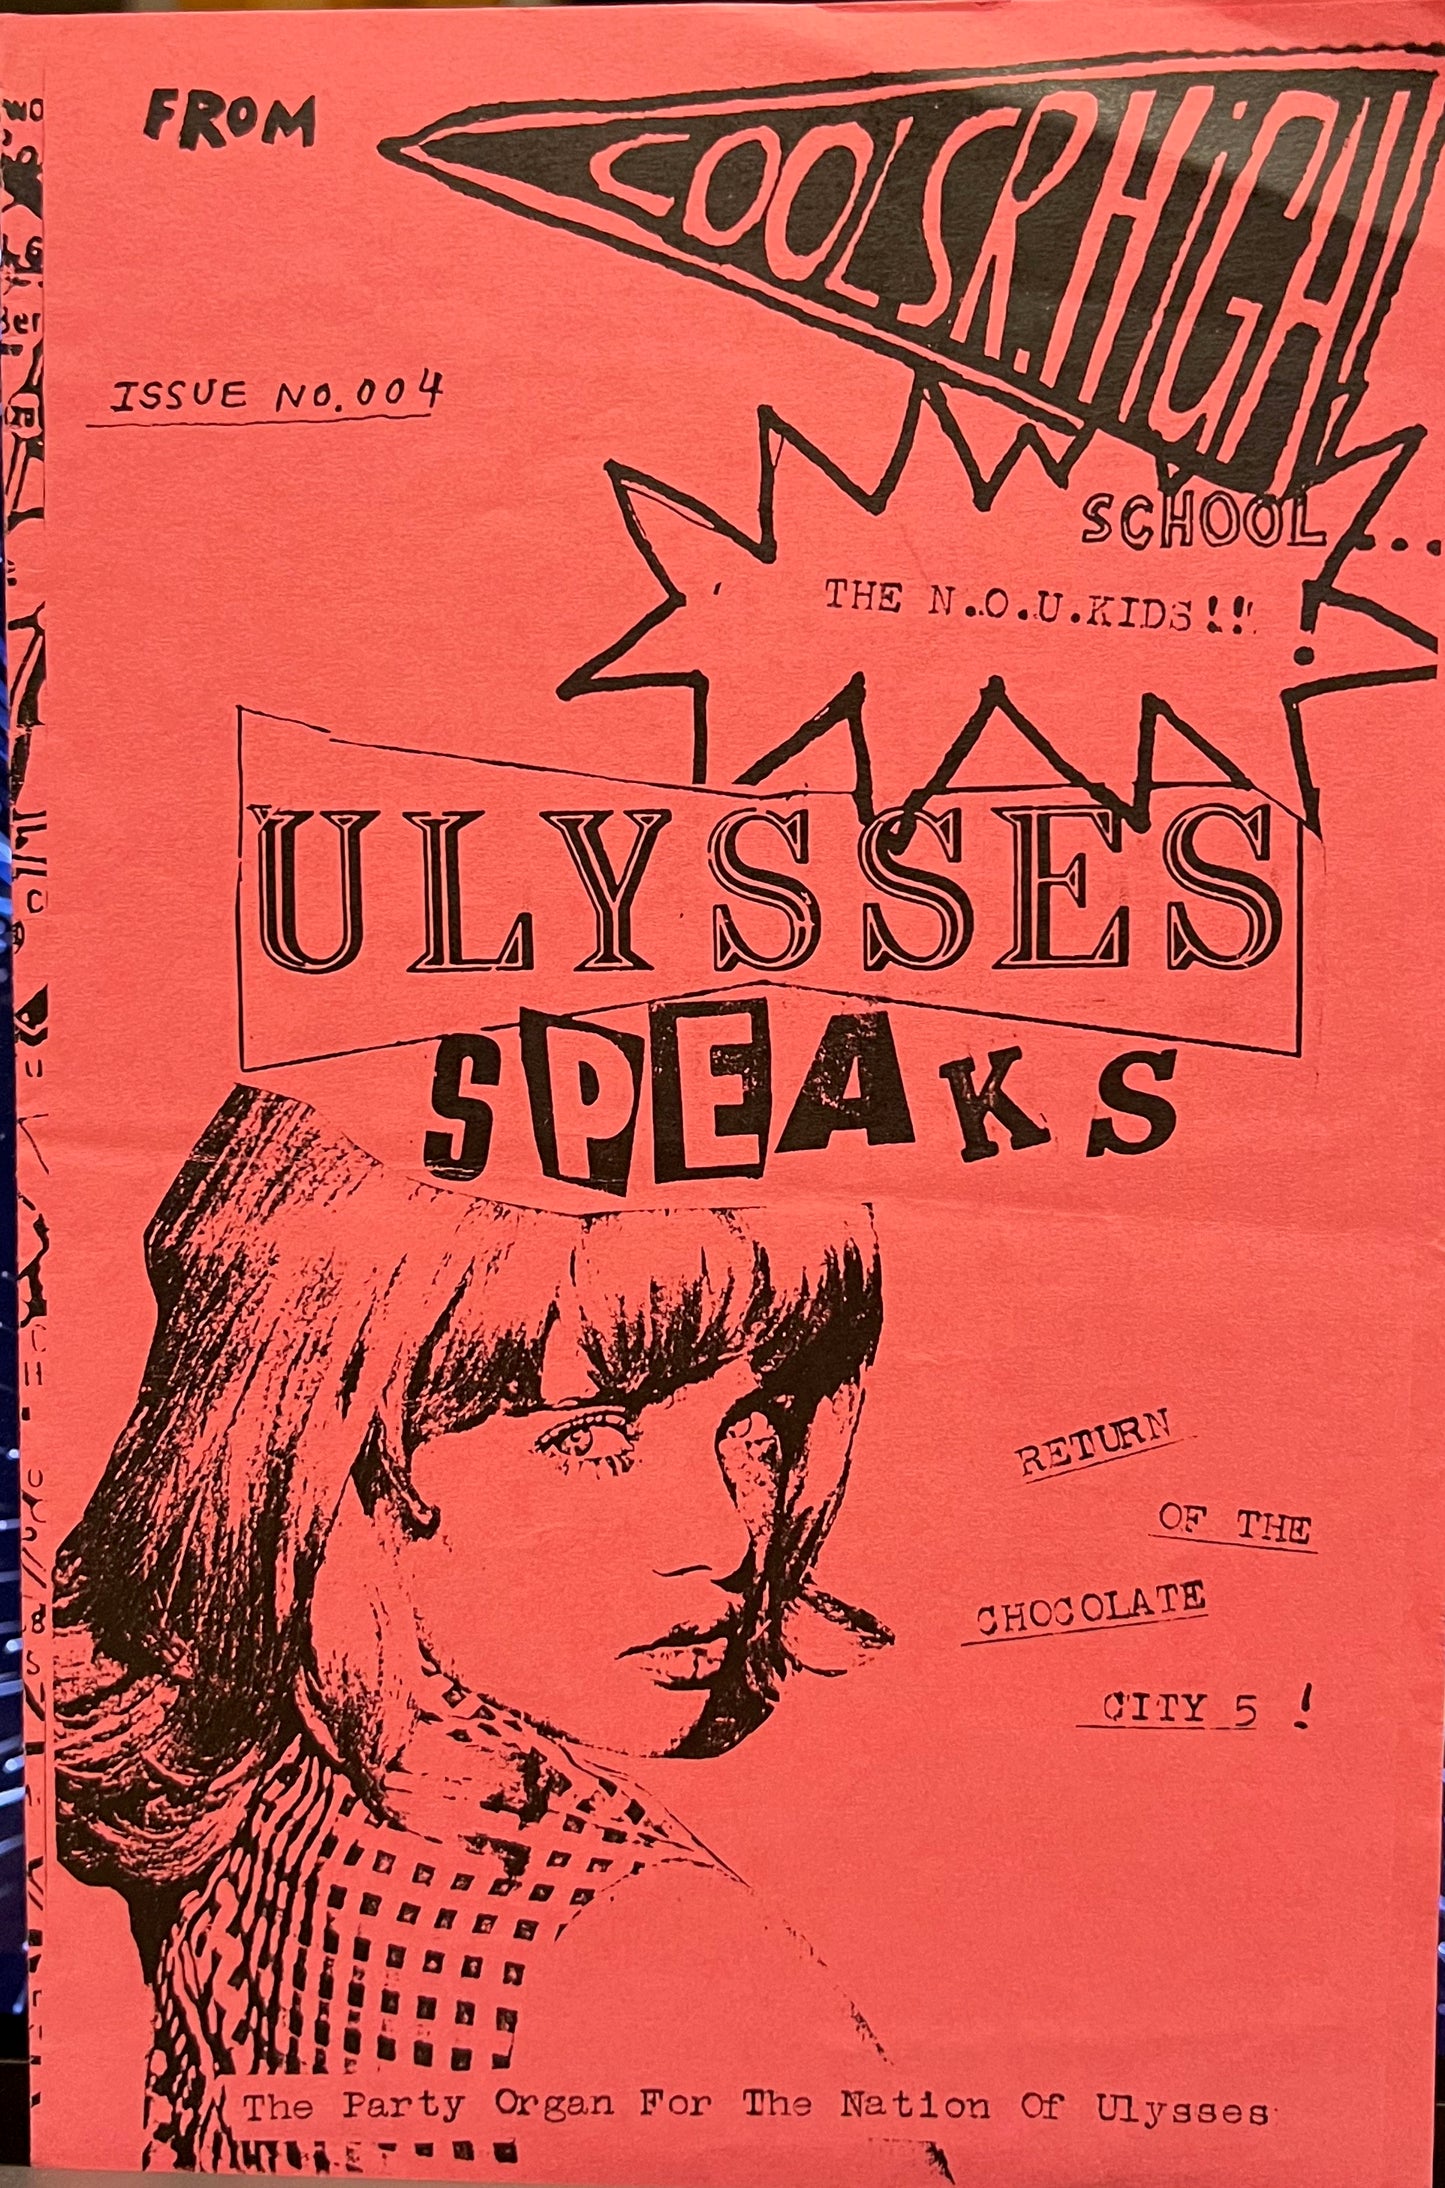 Ulysses Speaks